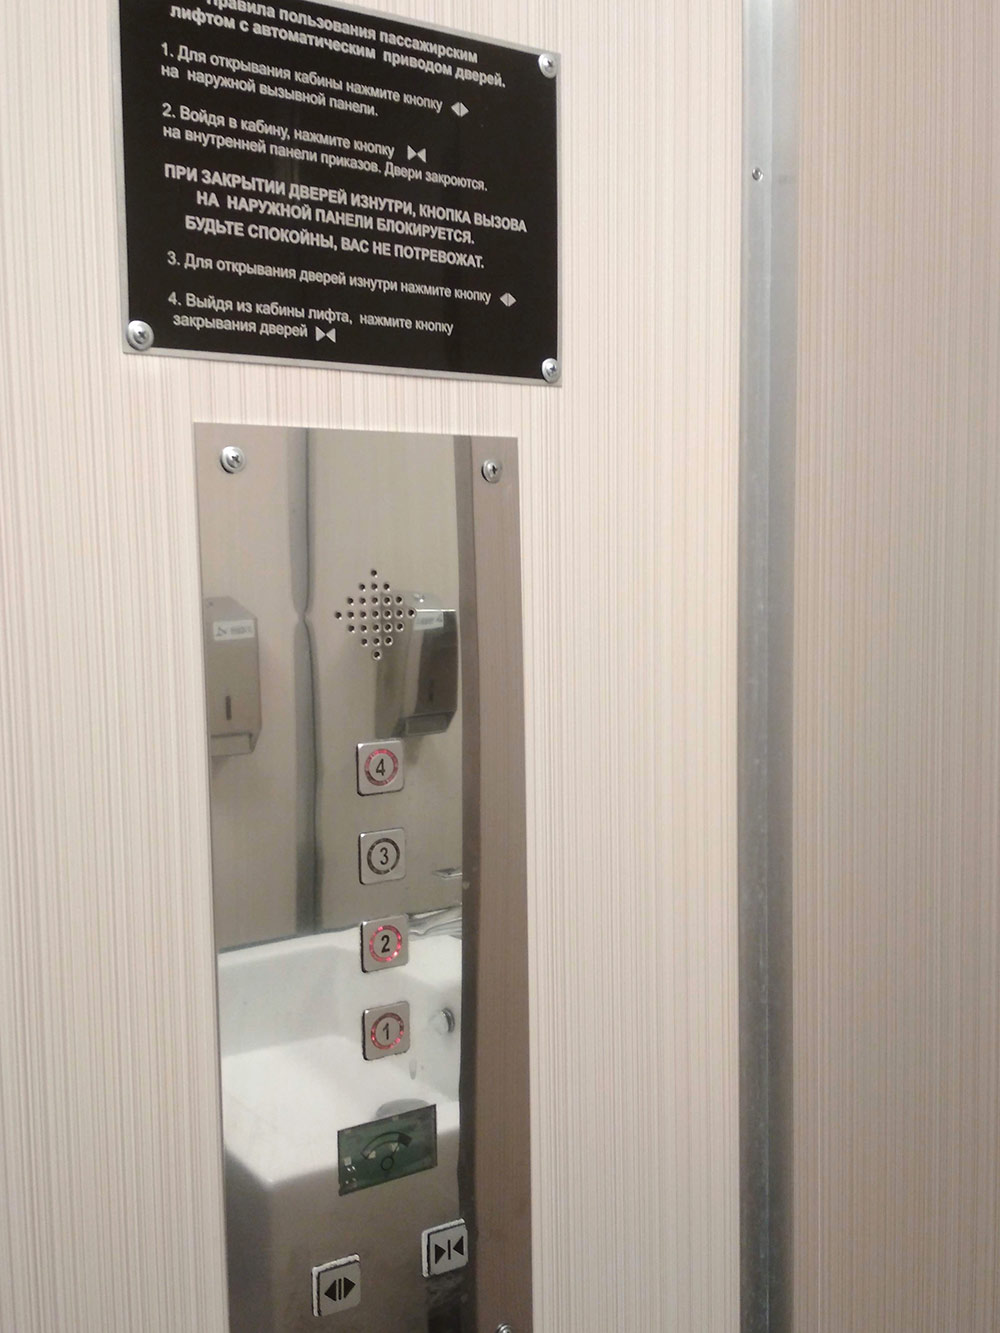 Фото из туалета-лифта. Если в уборной человек, снаружи кабинку не открыть